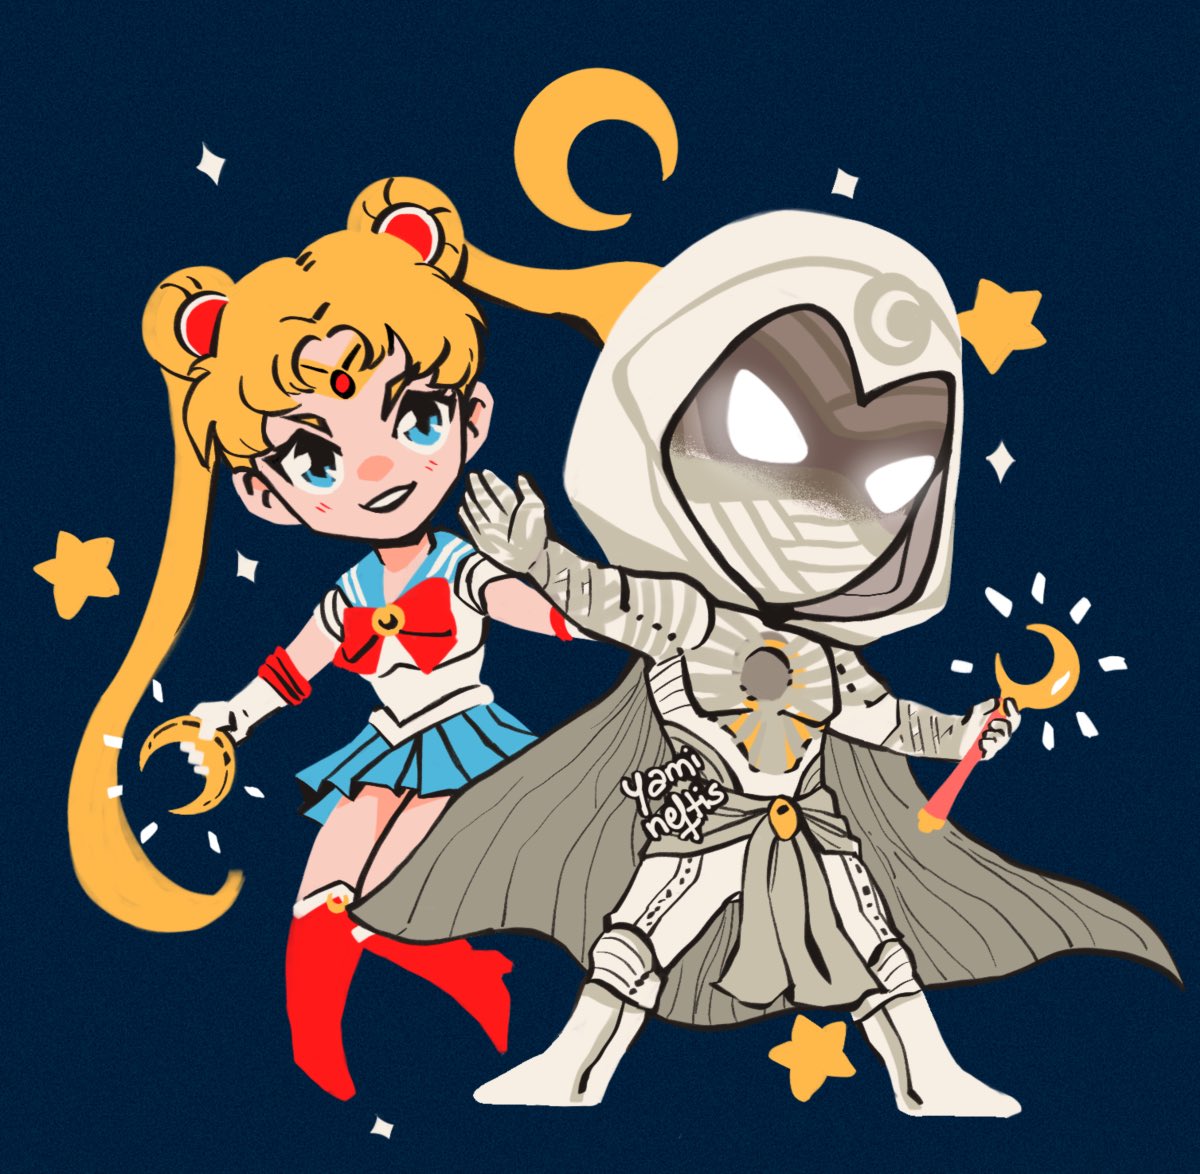 セーラームーン ,月野うさぎ 「Sailor Moon Knight 🌙 ✨ 」|Gabi ⎊ 🇵🇪のイラスト